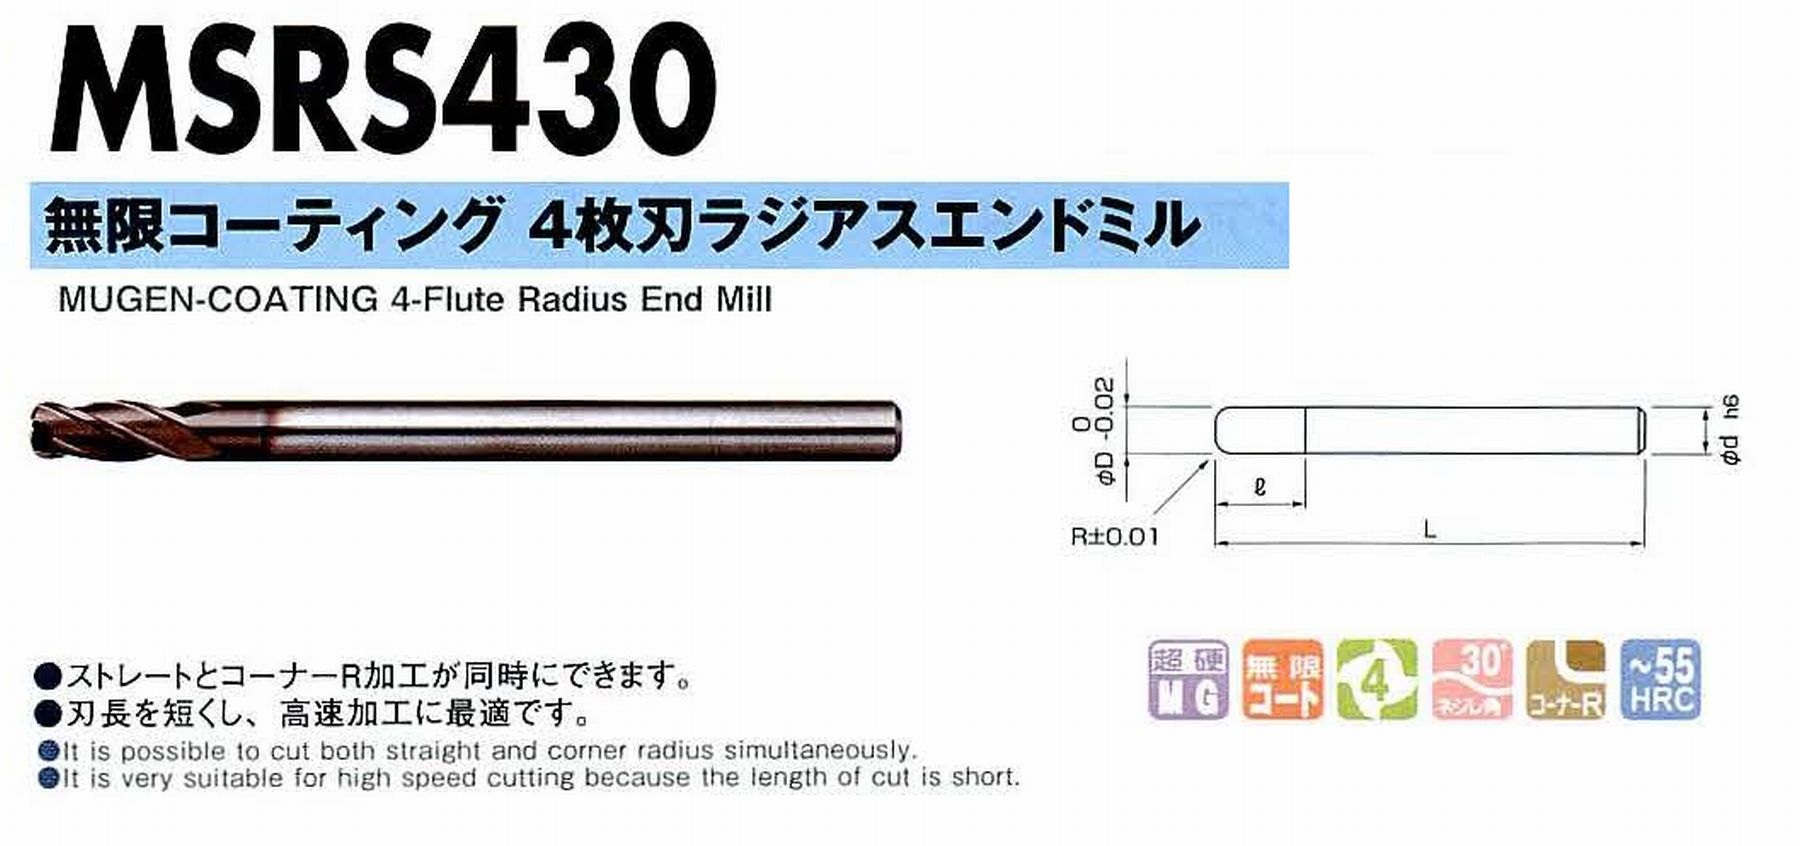 NS 日進工具 MSRS430 無限コーティング4枚刃ラジアスエンドミル コードNO．08-00710-06020 刃径6 ボール半径R2 刃長12 シャンク径6mm 全長80